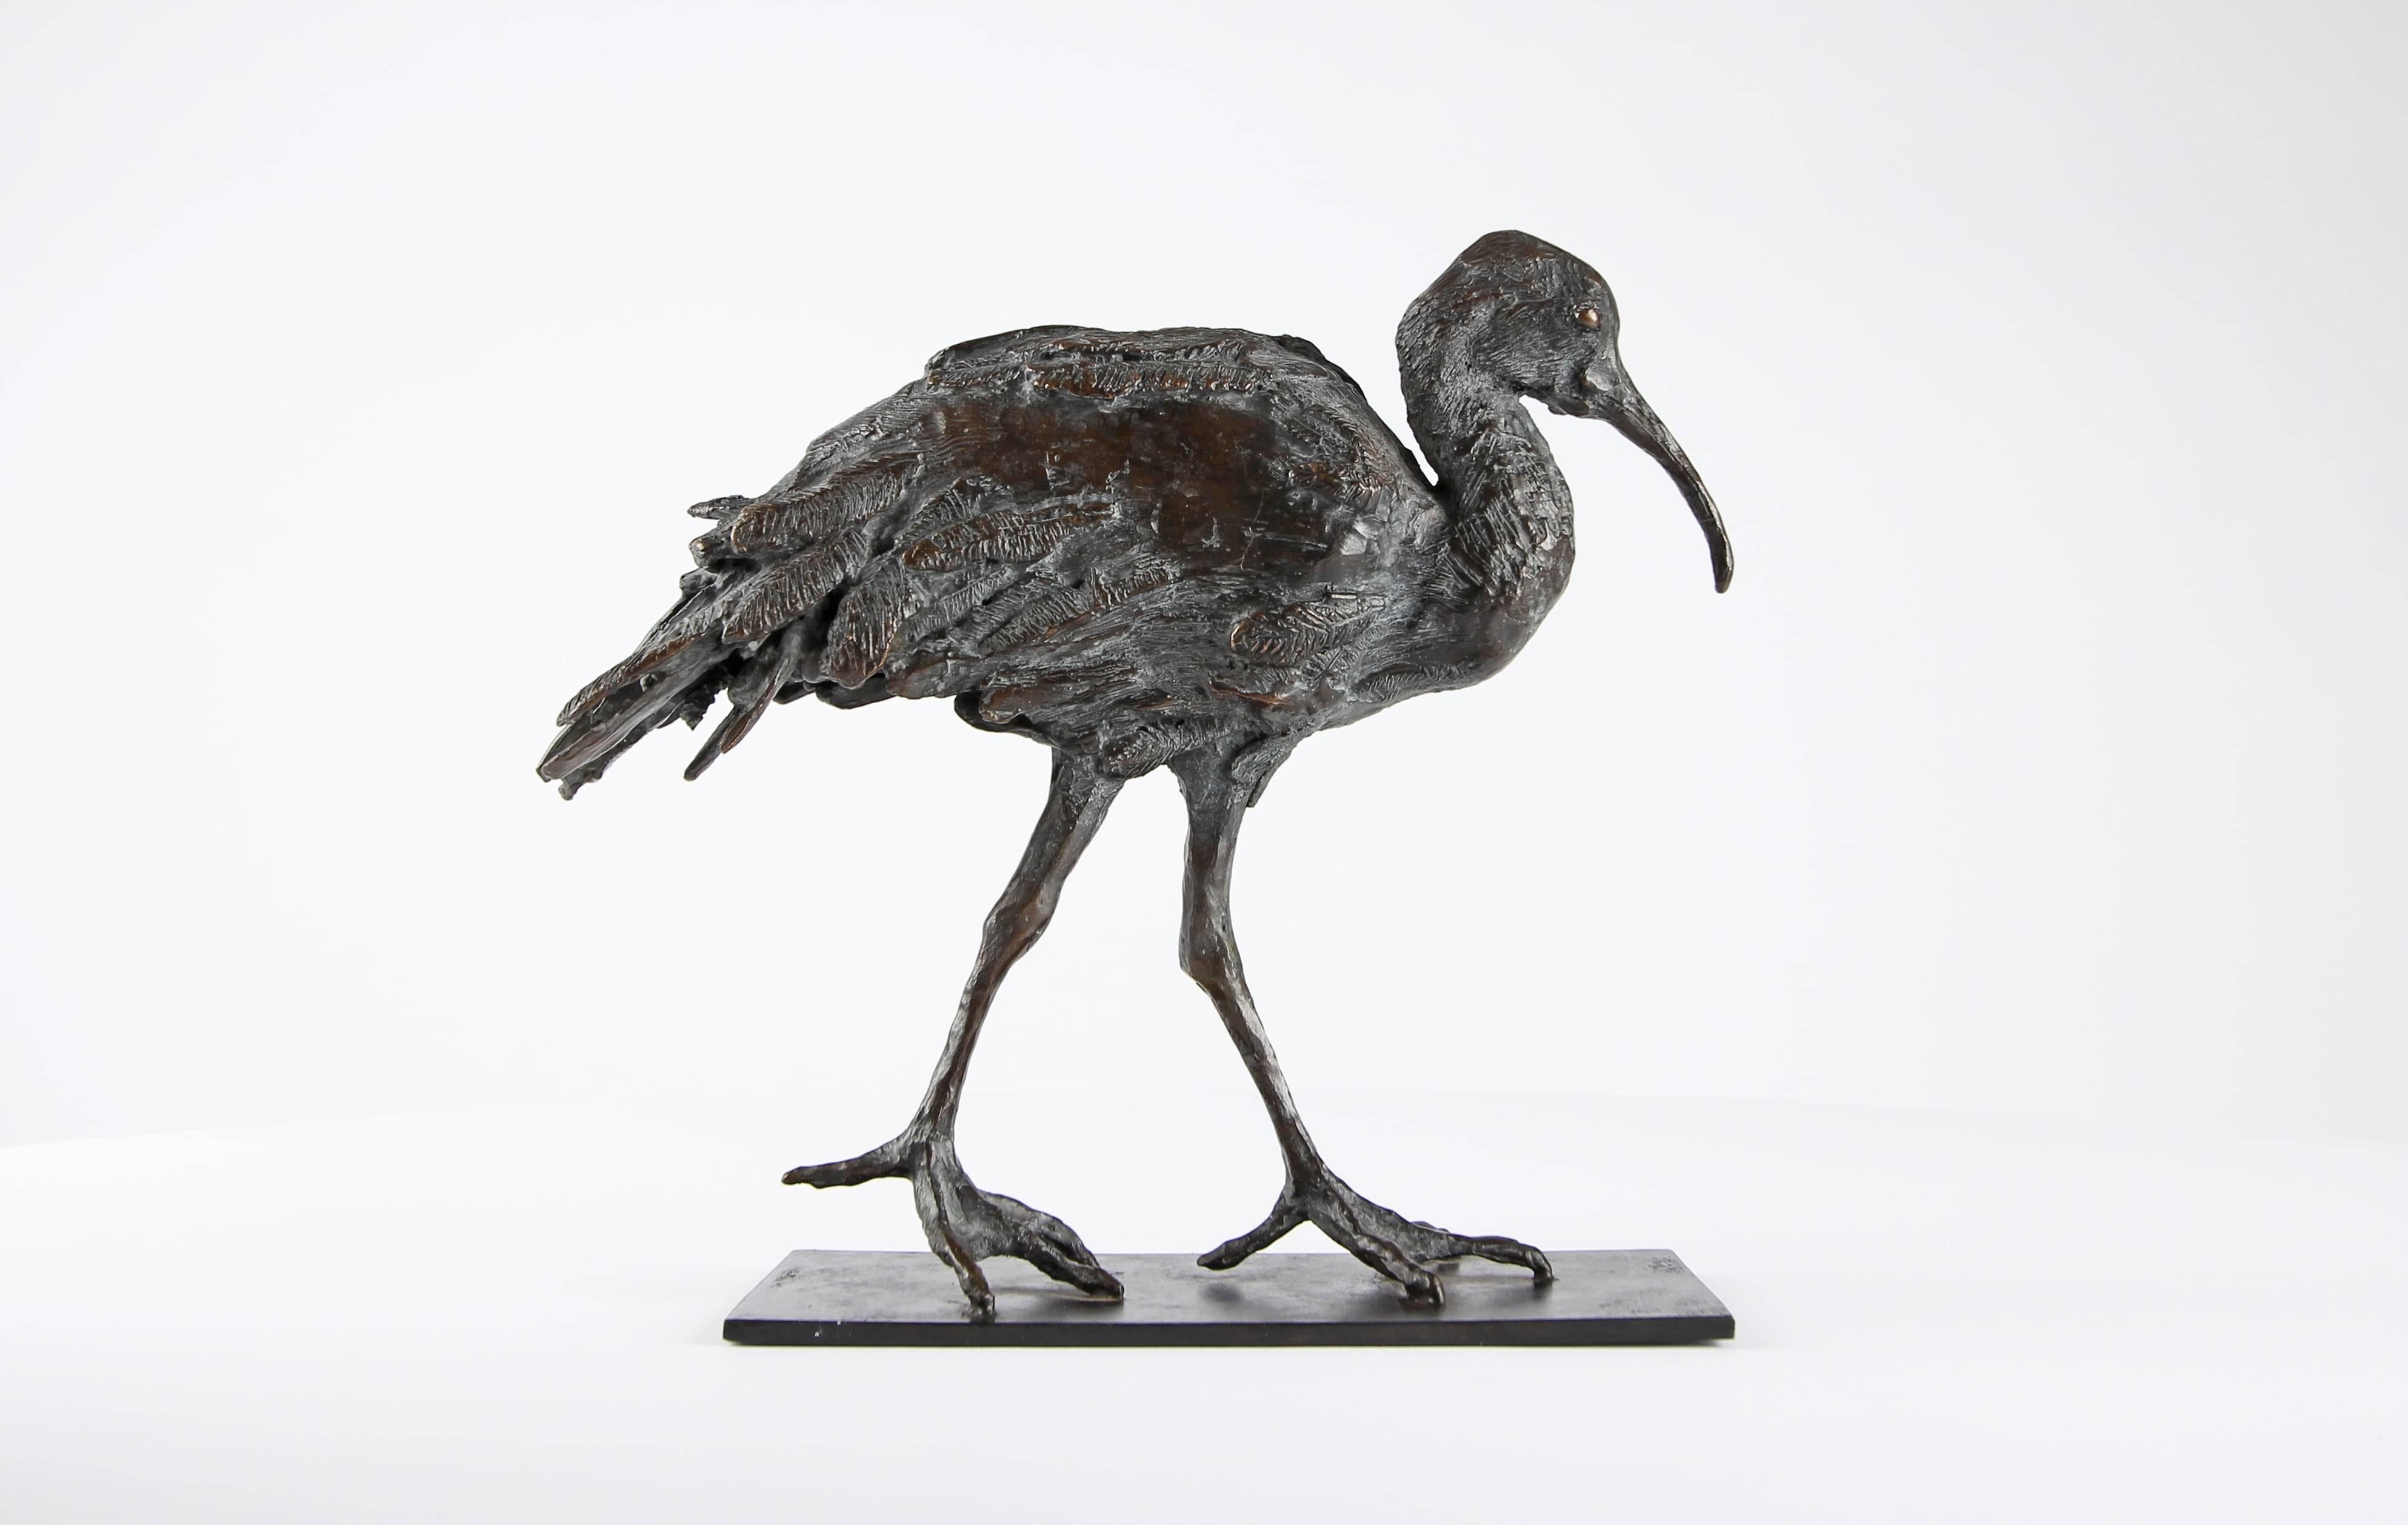 Artistics est une sculpture en bronze unique de l'artiste contemporain Chésade, dont les dimensions sont de 26 × 26 × 12 cm (10,2 × 10,2 × 4,7 in). La sculpture est signée et accompagnée d'un certificat d'authenticité.

La sculpture de Chésade